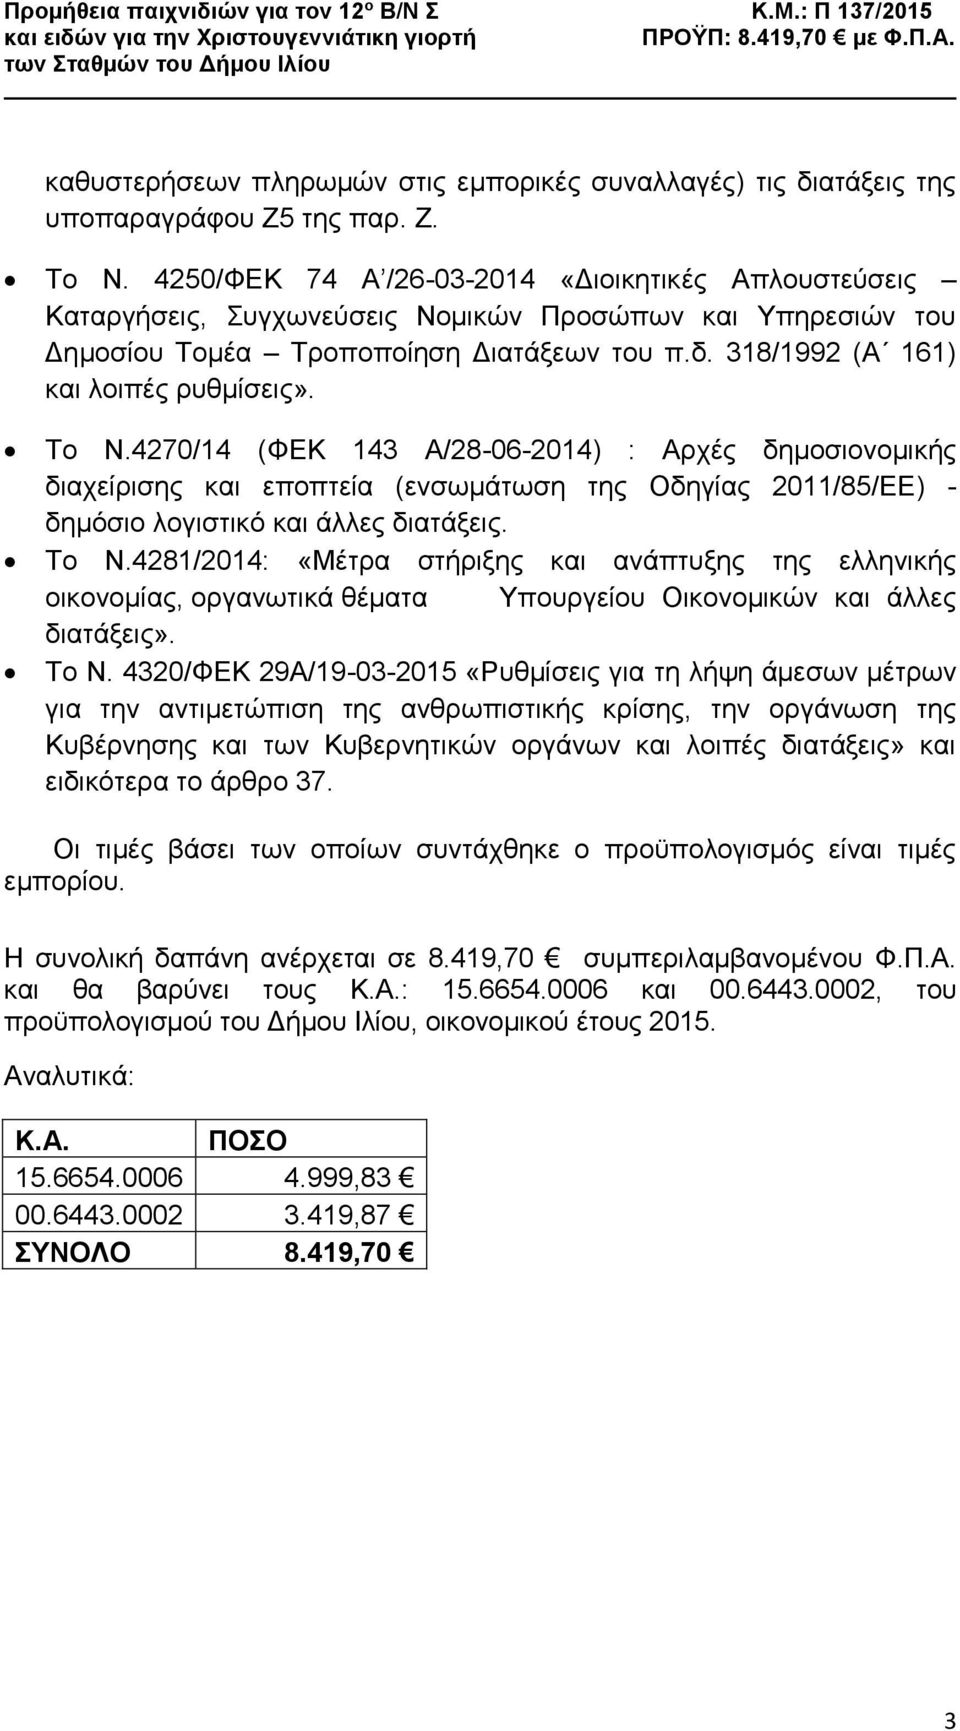 Το Ν.4270/14 (ΦΕΚ 143 Α/28-06-2014) : Αρχές δημοσιονομικής διαχείρισης και εποπτεία (ενσωμάτωση της Οδηγίας 2011/85/ΕΕ) - δημόσιο λογιστικό και άλλες διατάξεις. Το Ν.